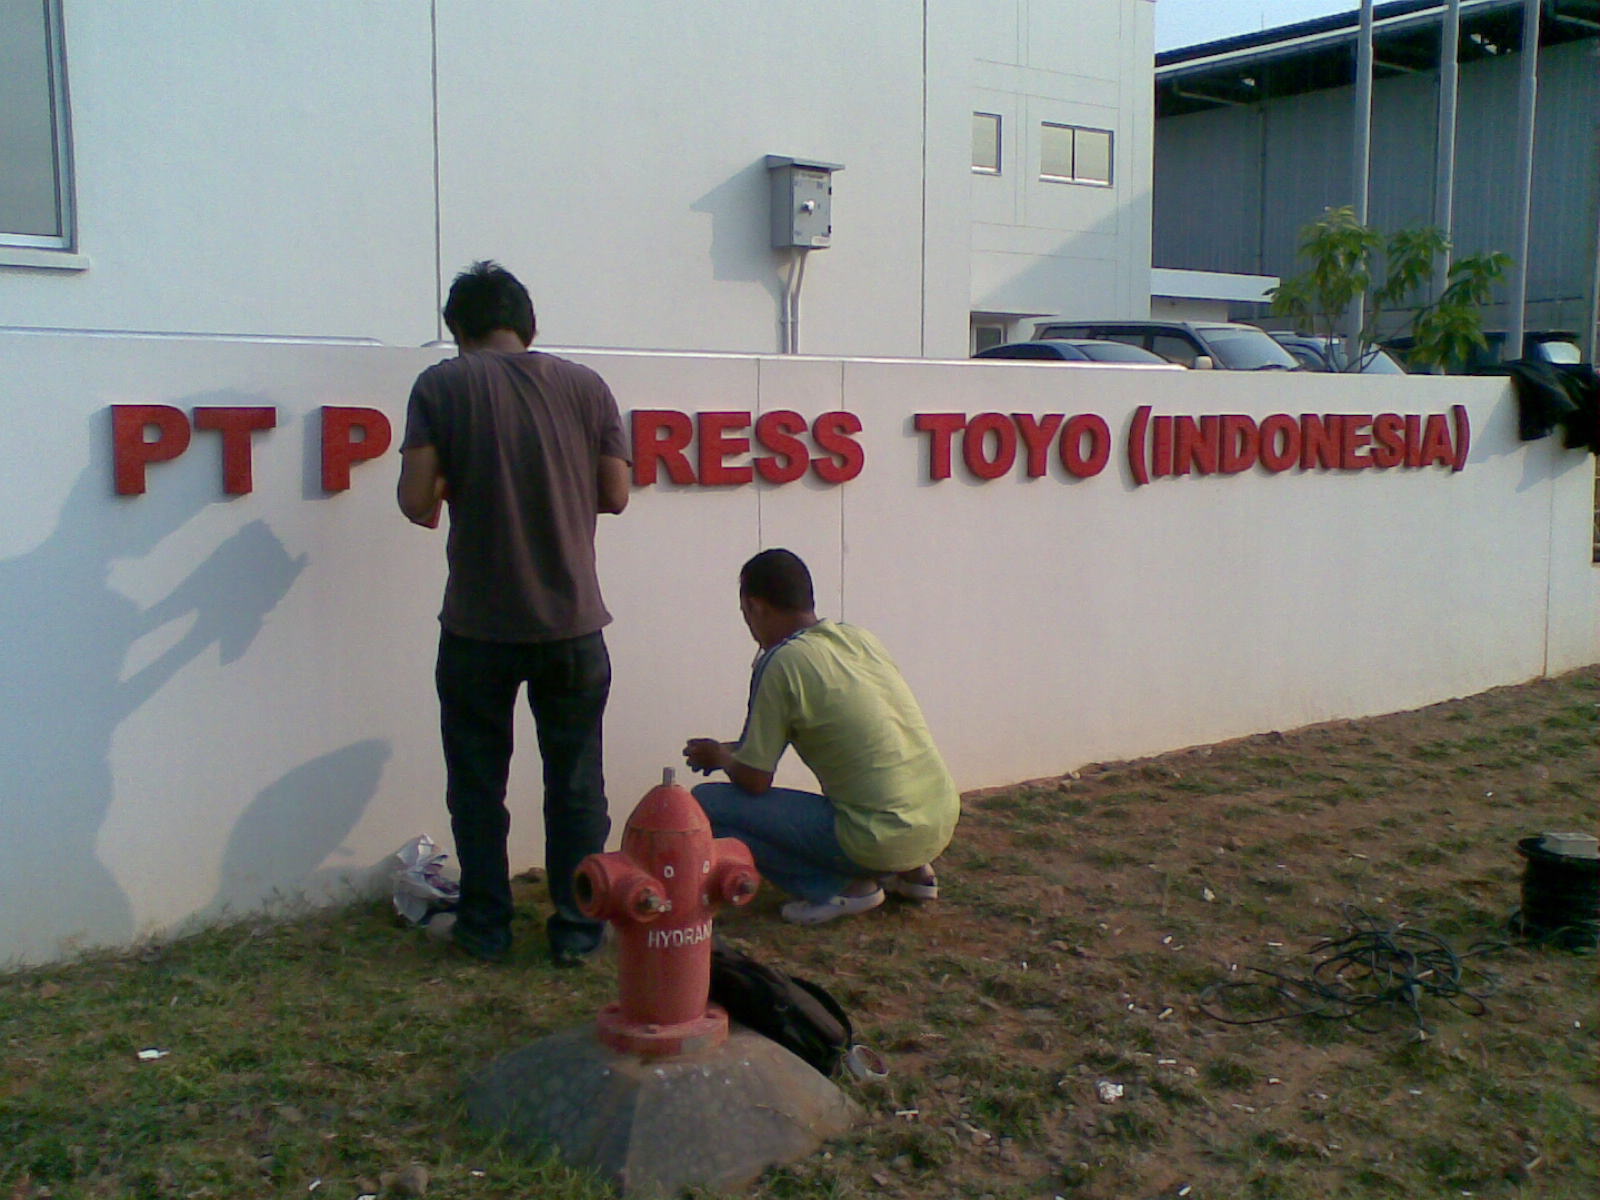 Pt Progress Toyo Indonesia